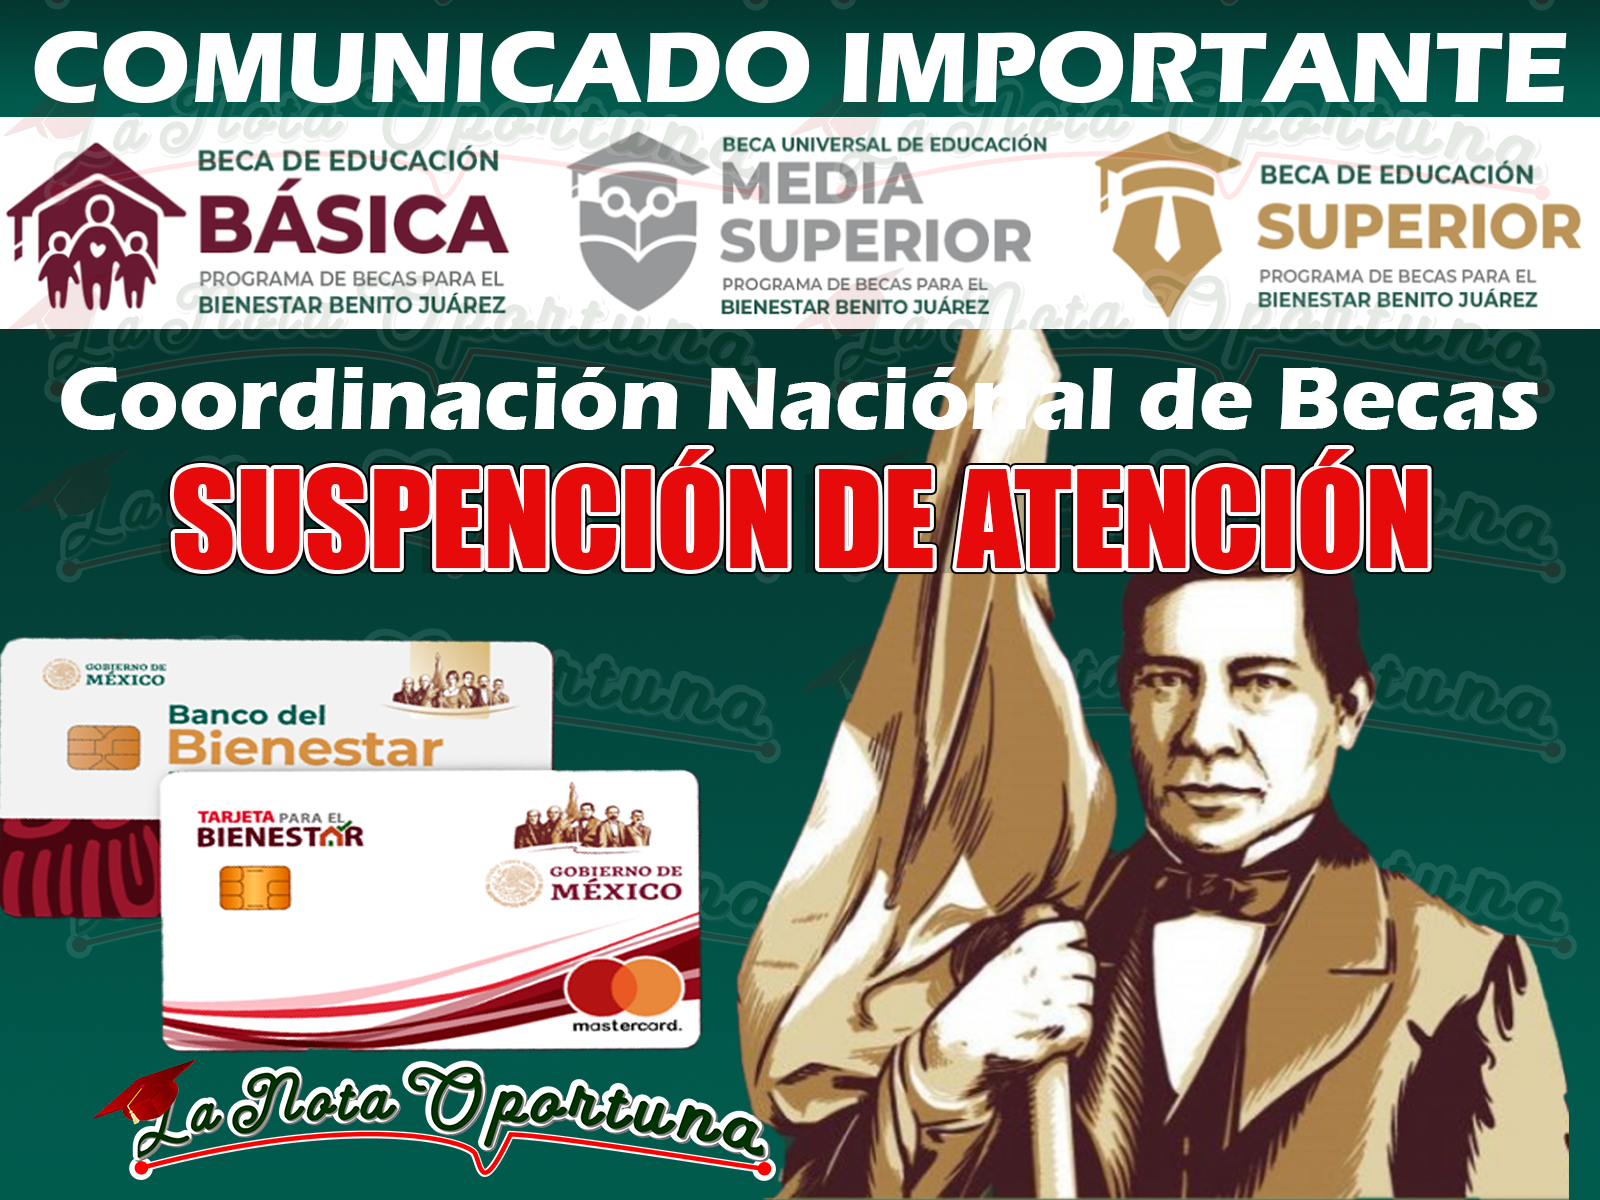 Anuncio Importante ¡Suspenden Atención para beneficiarios de las Becas Benito Juárez